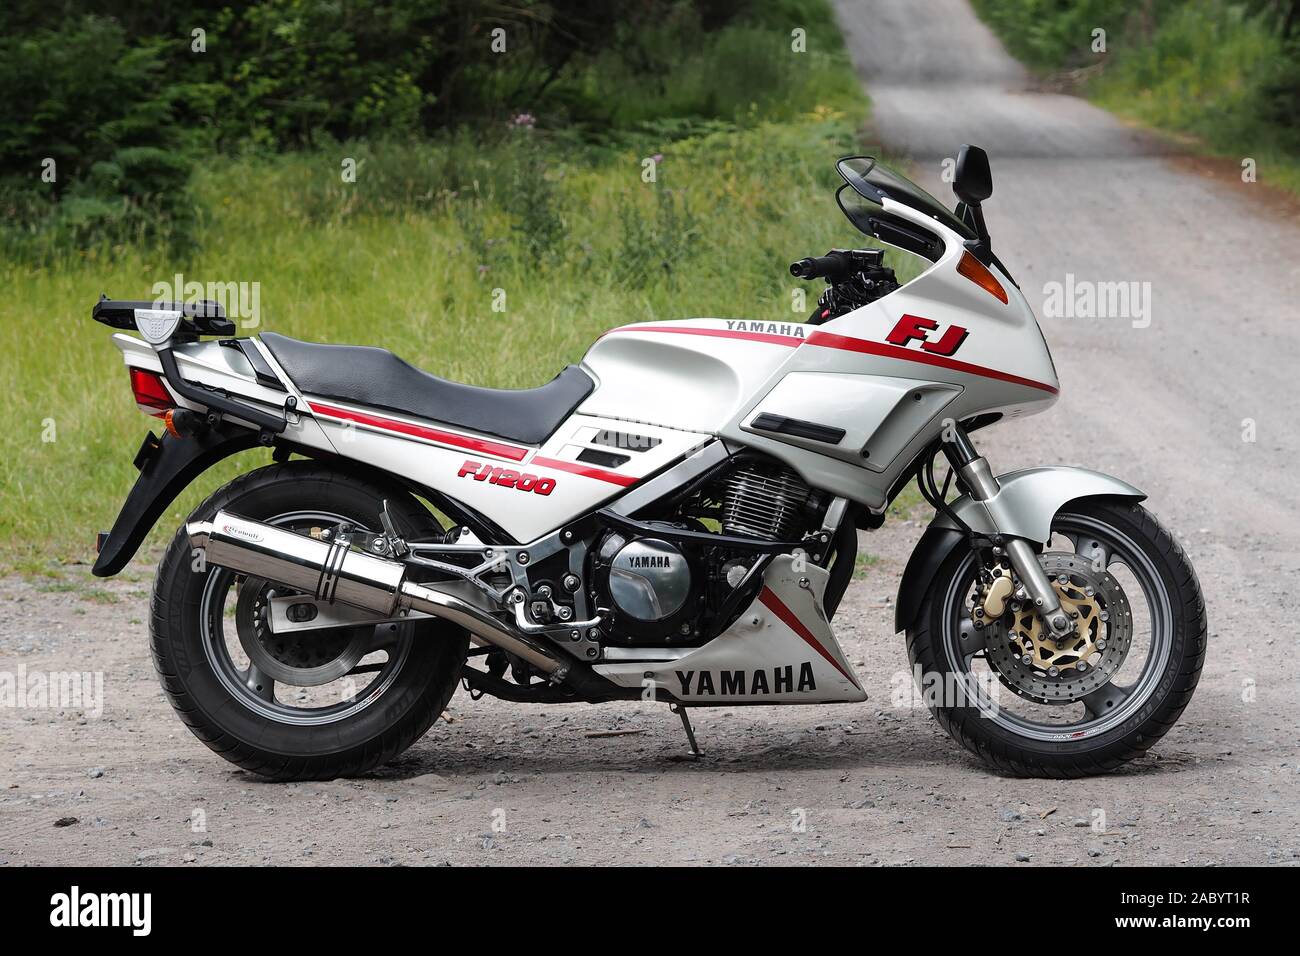 Yamaha FJ1200 sports touring motorcycle stationné sur la route des bois. Tipperary, Irlande Banque D'Images